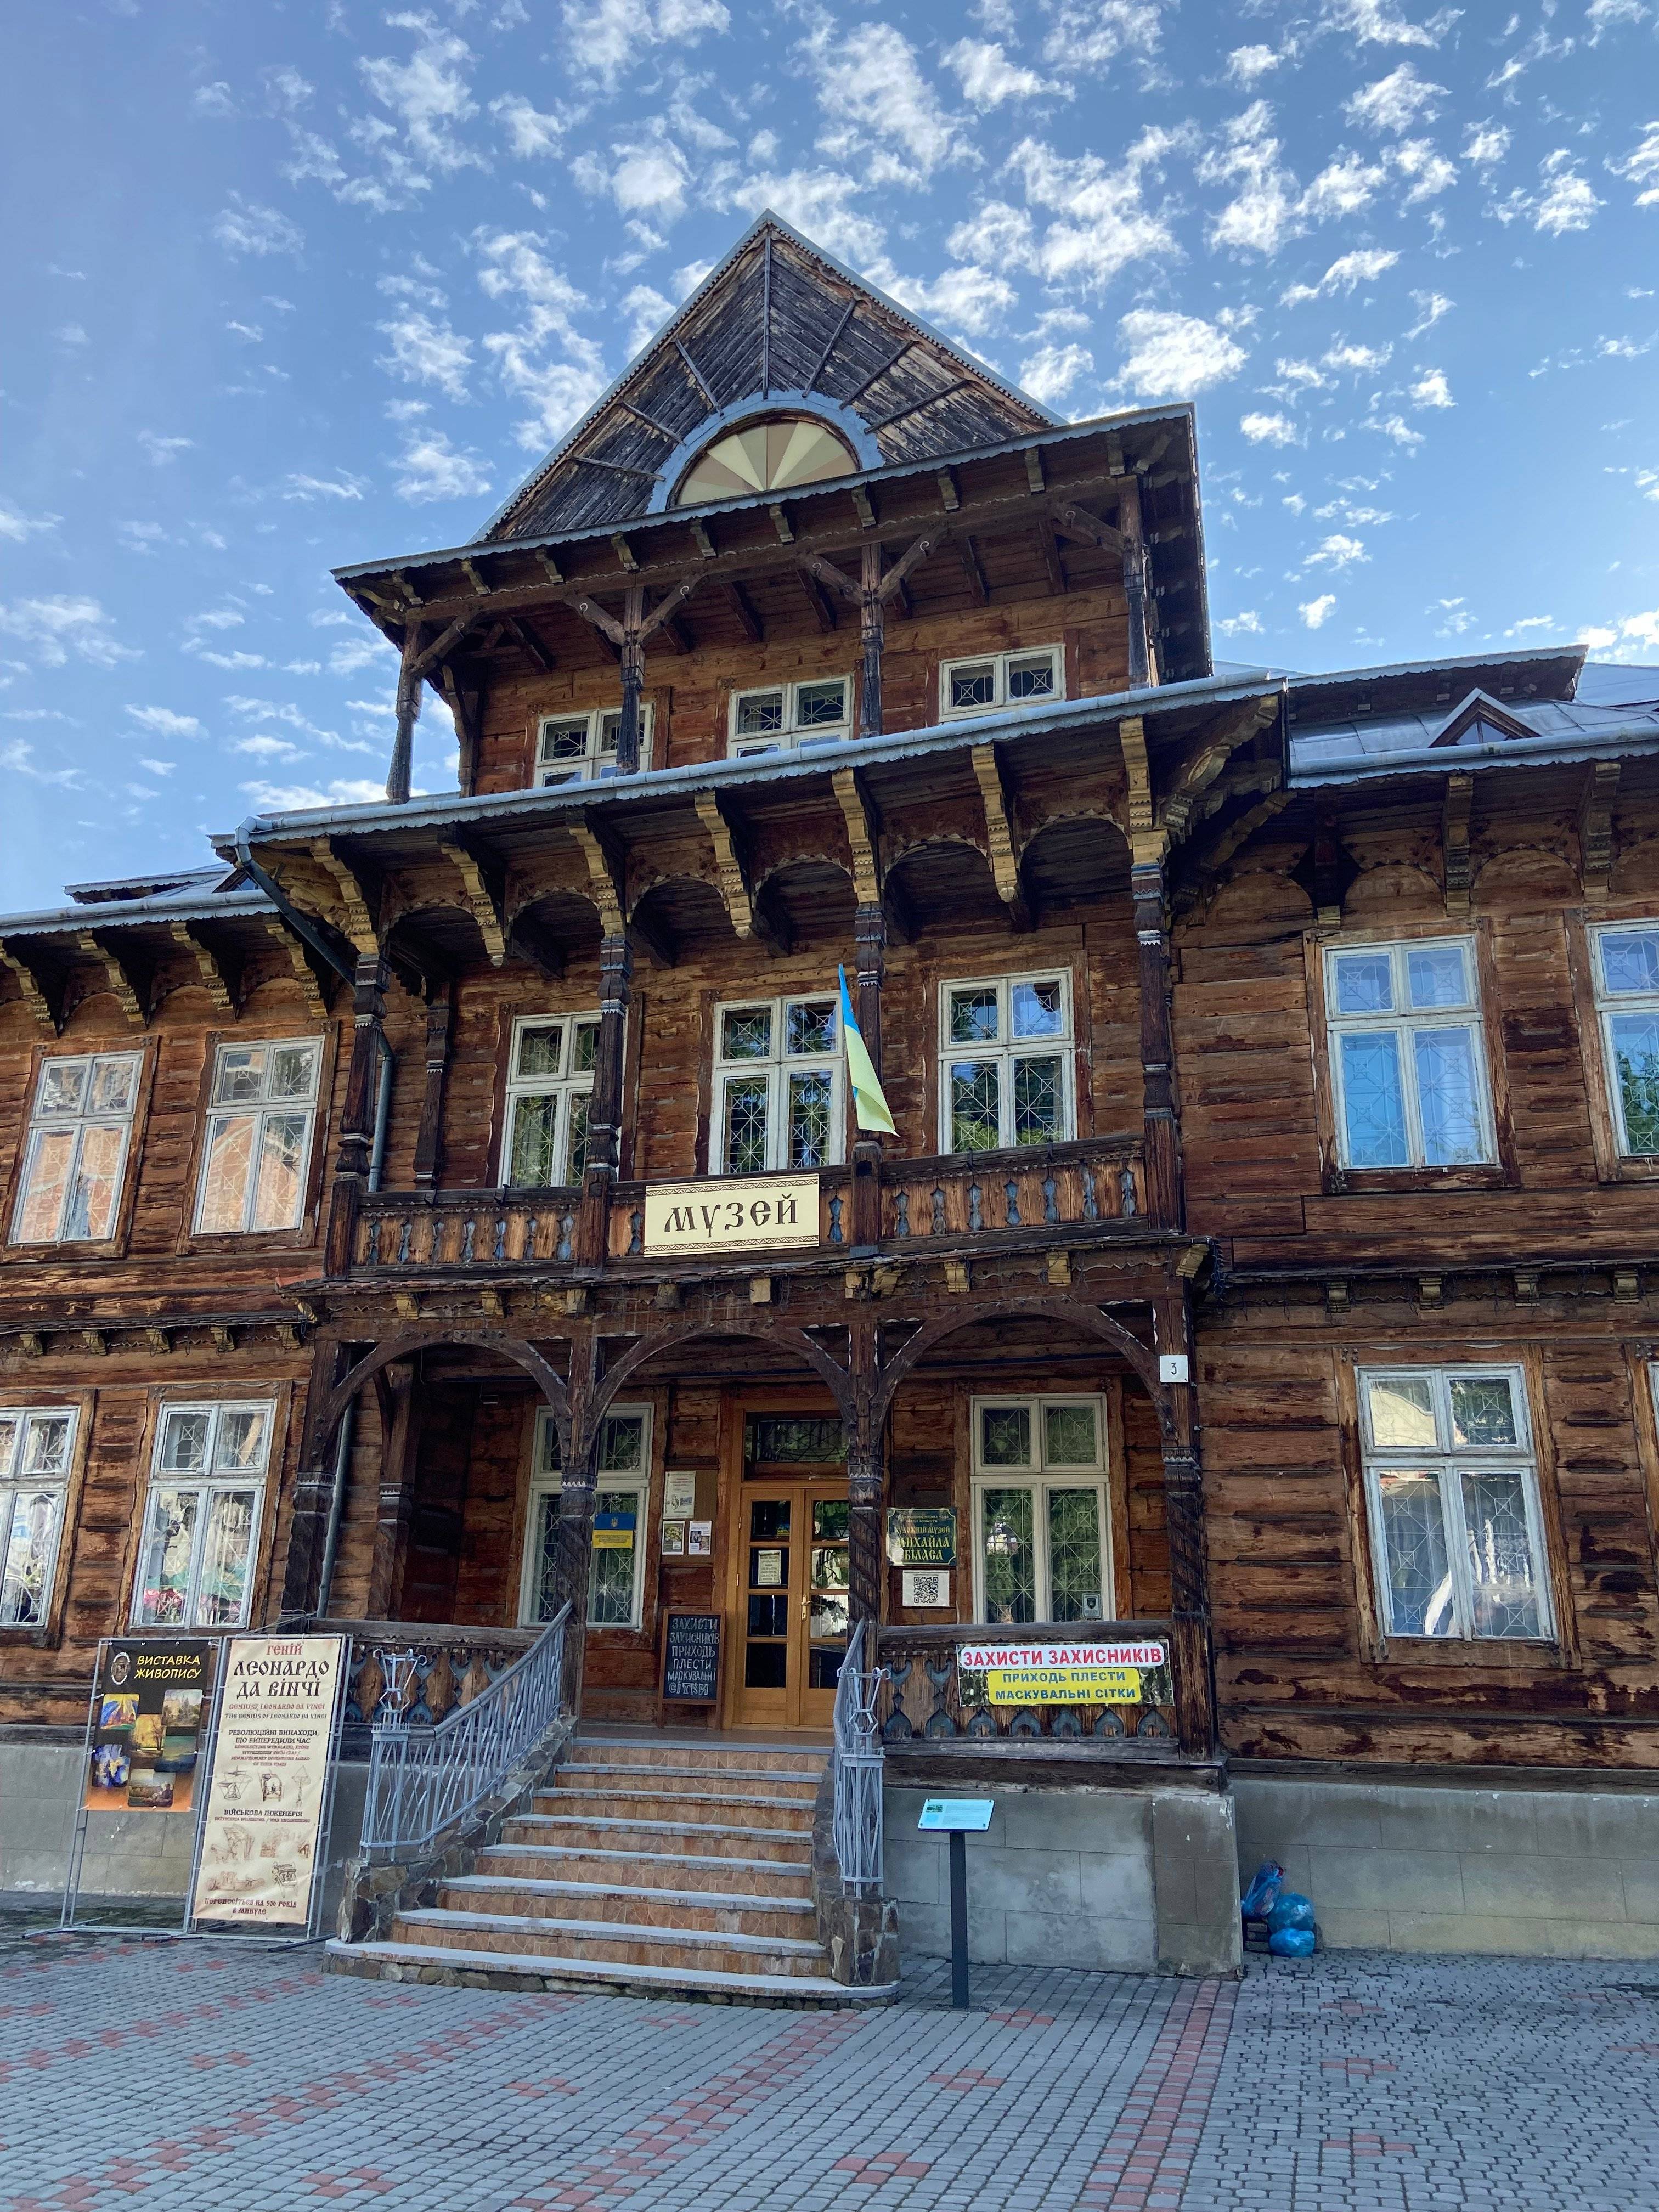 wysoki, drewniany budynek z napisem po ukraińsku "Muzeum"